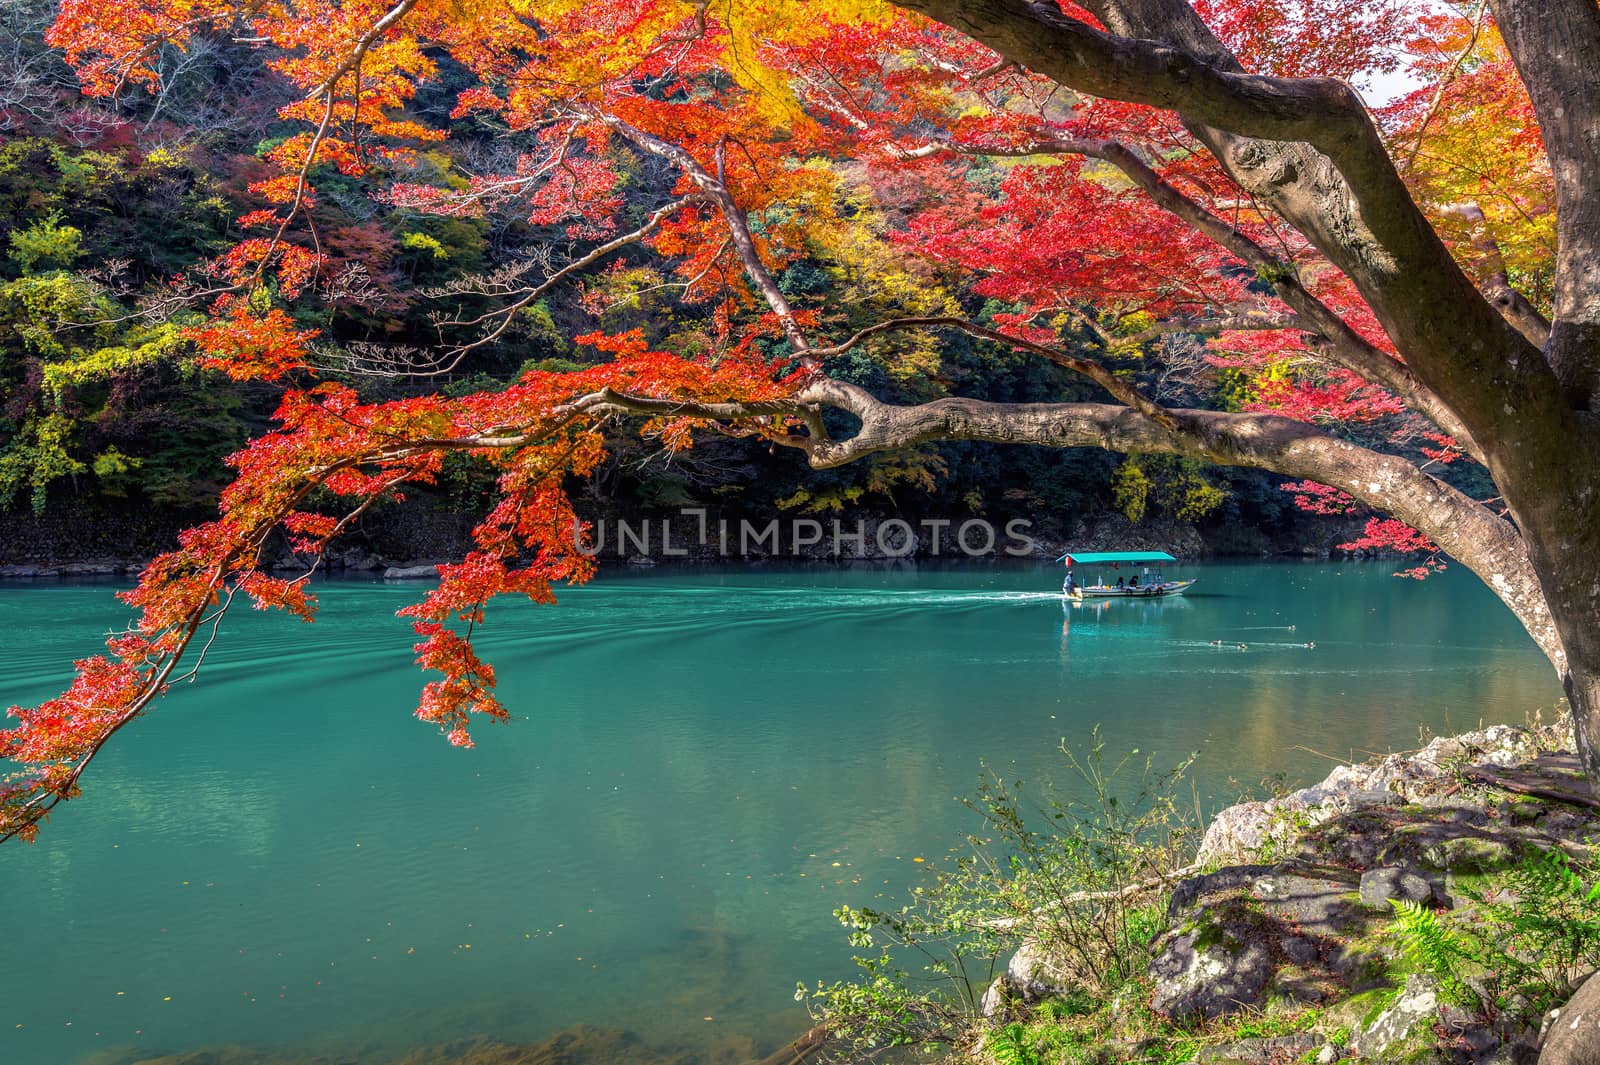 Arashiyama in autumn season along the river in Kyoto, Japan.